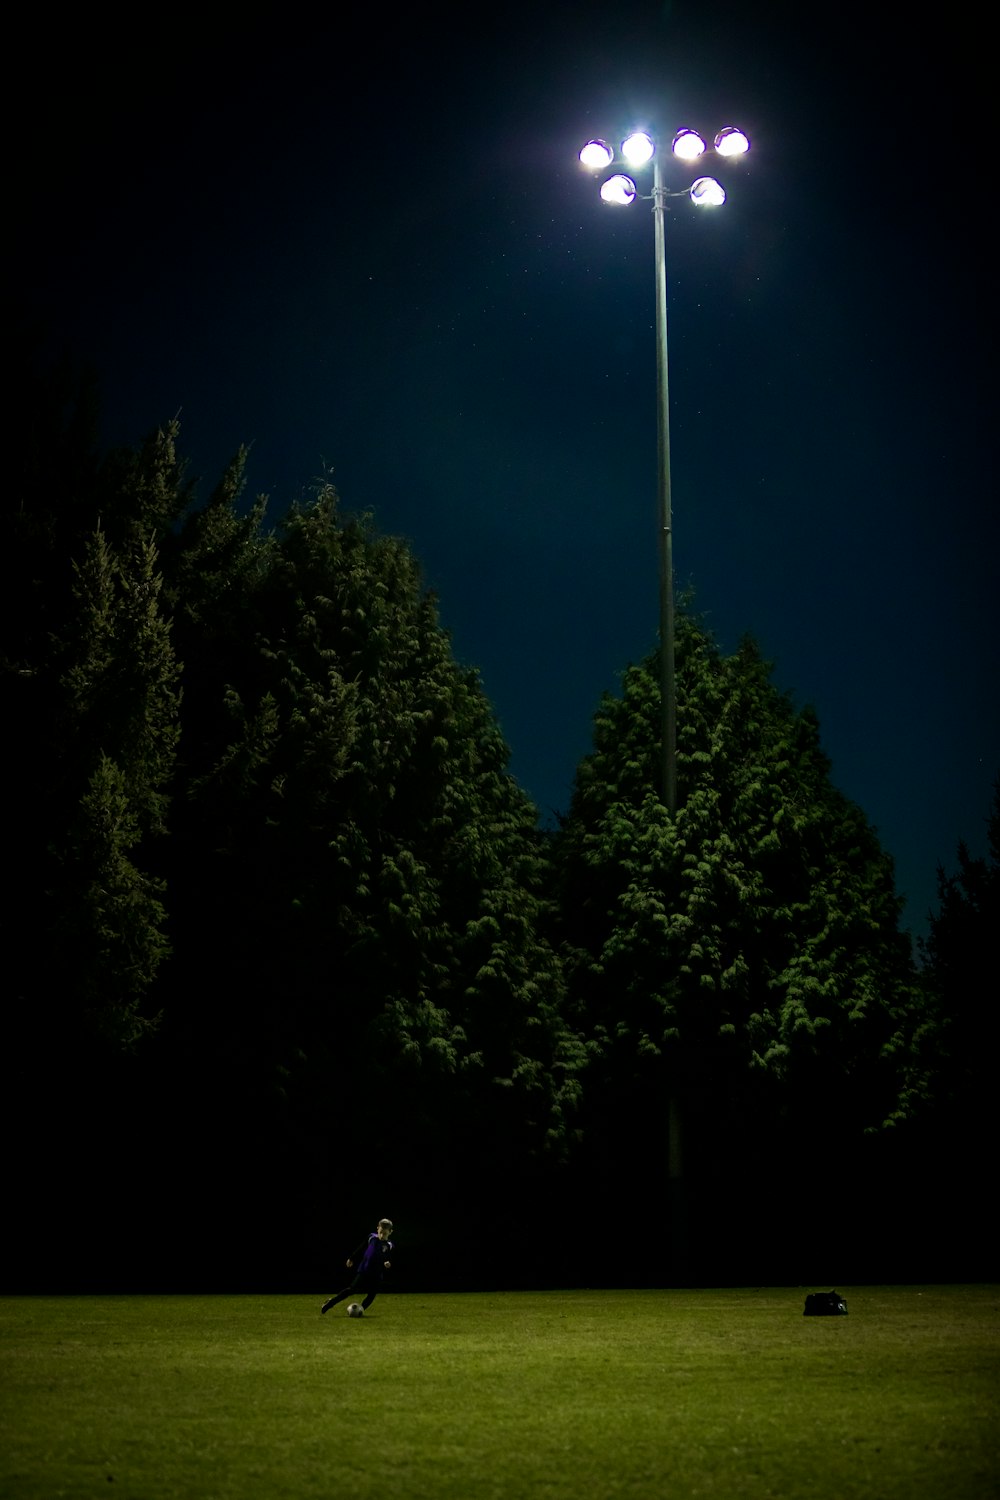 man playing football during nighttime